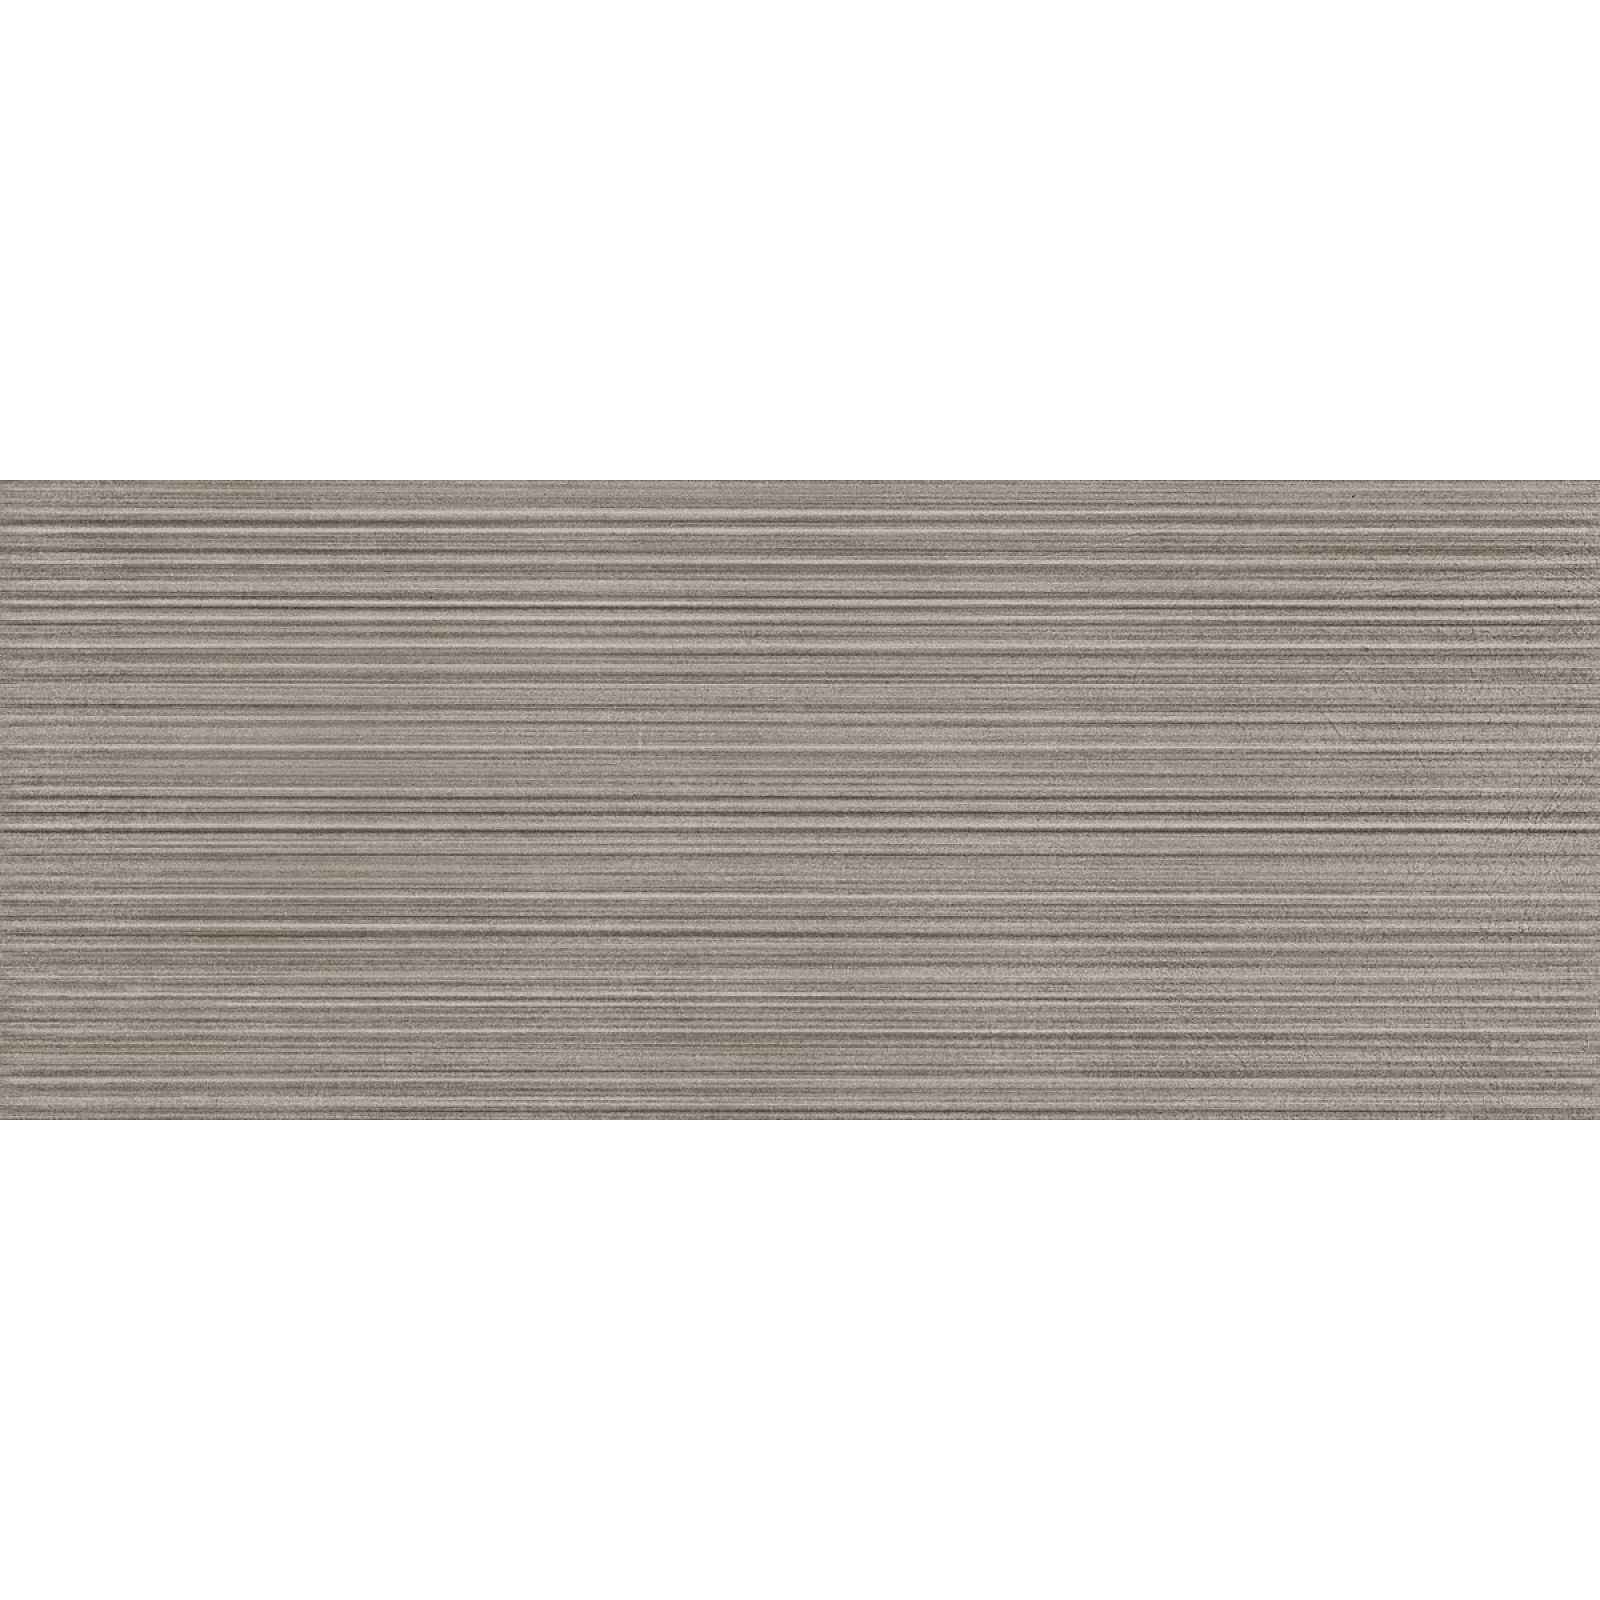 Obklad Del Conca Espressione grigio bambu 20x50 cm mat 54ES15BA